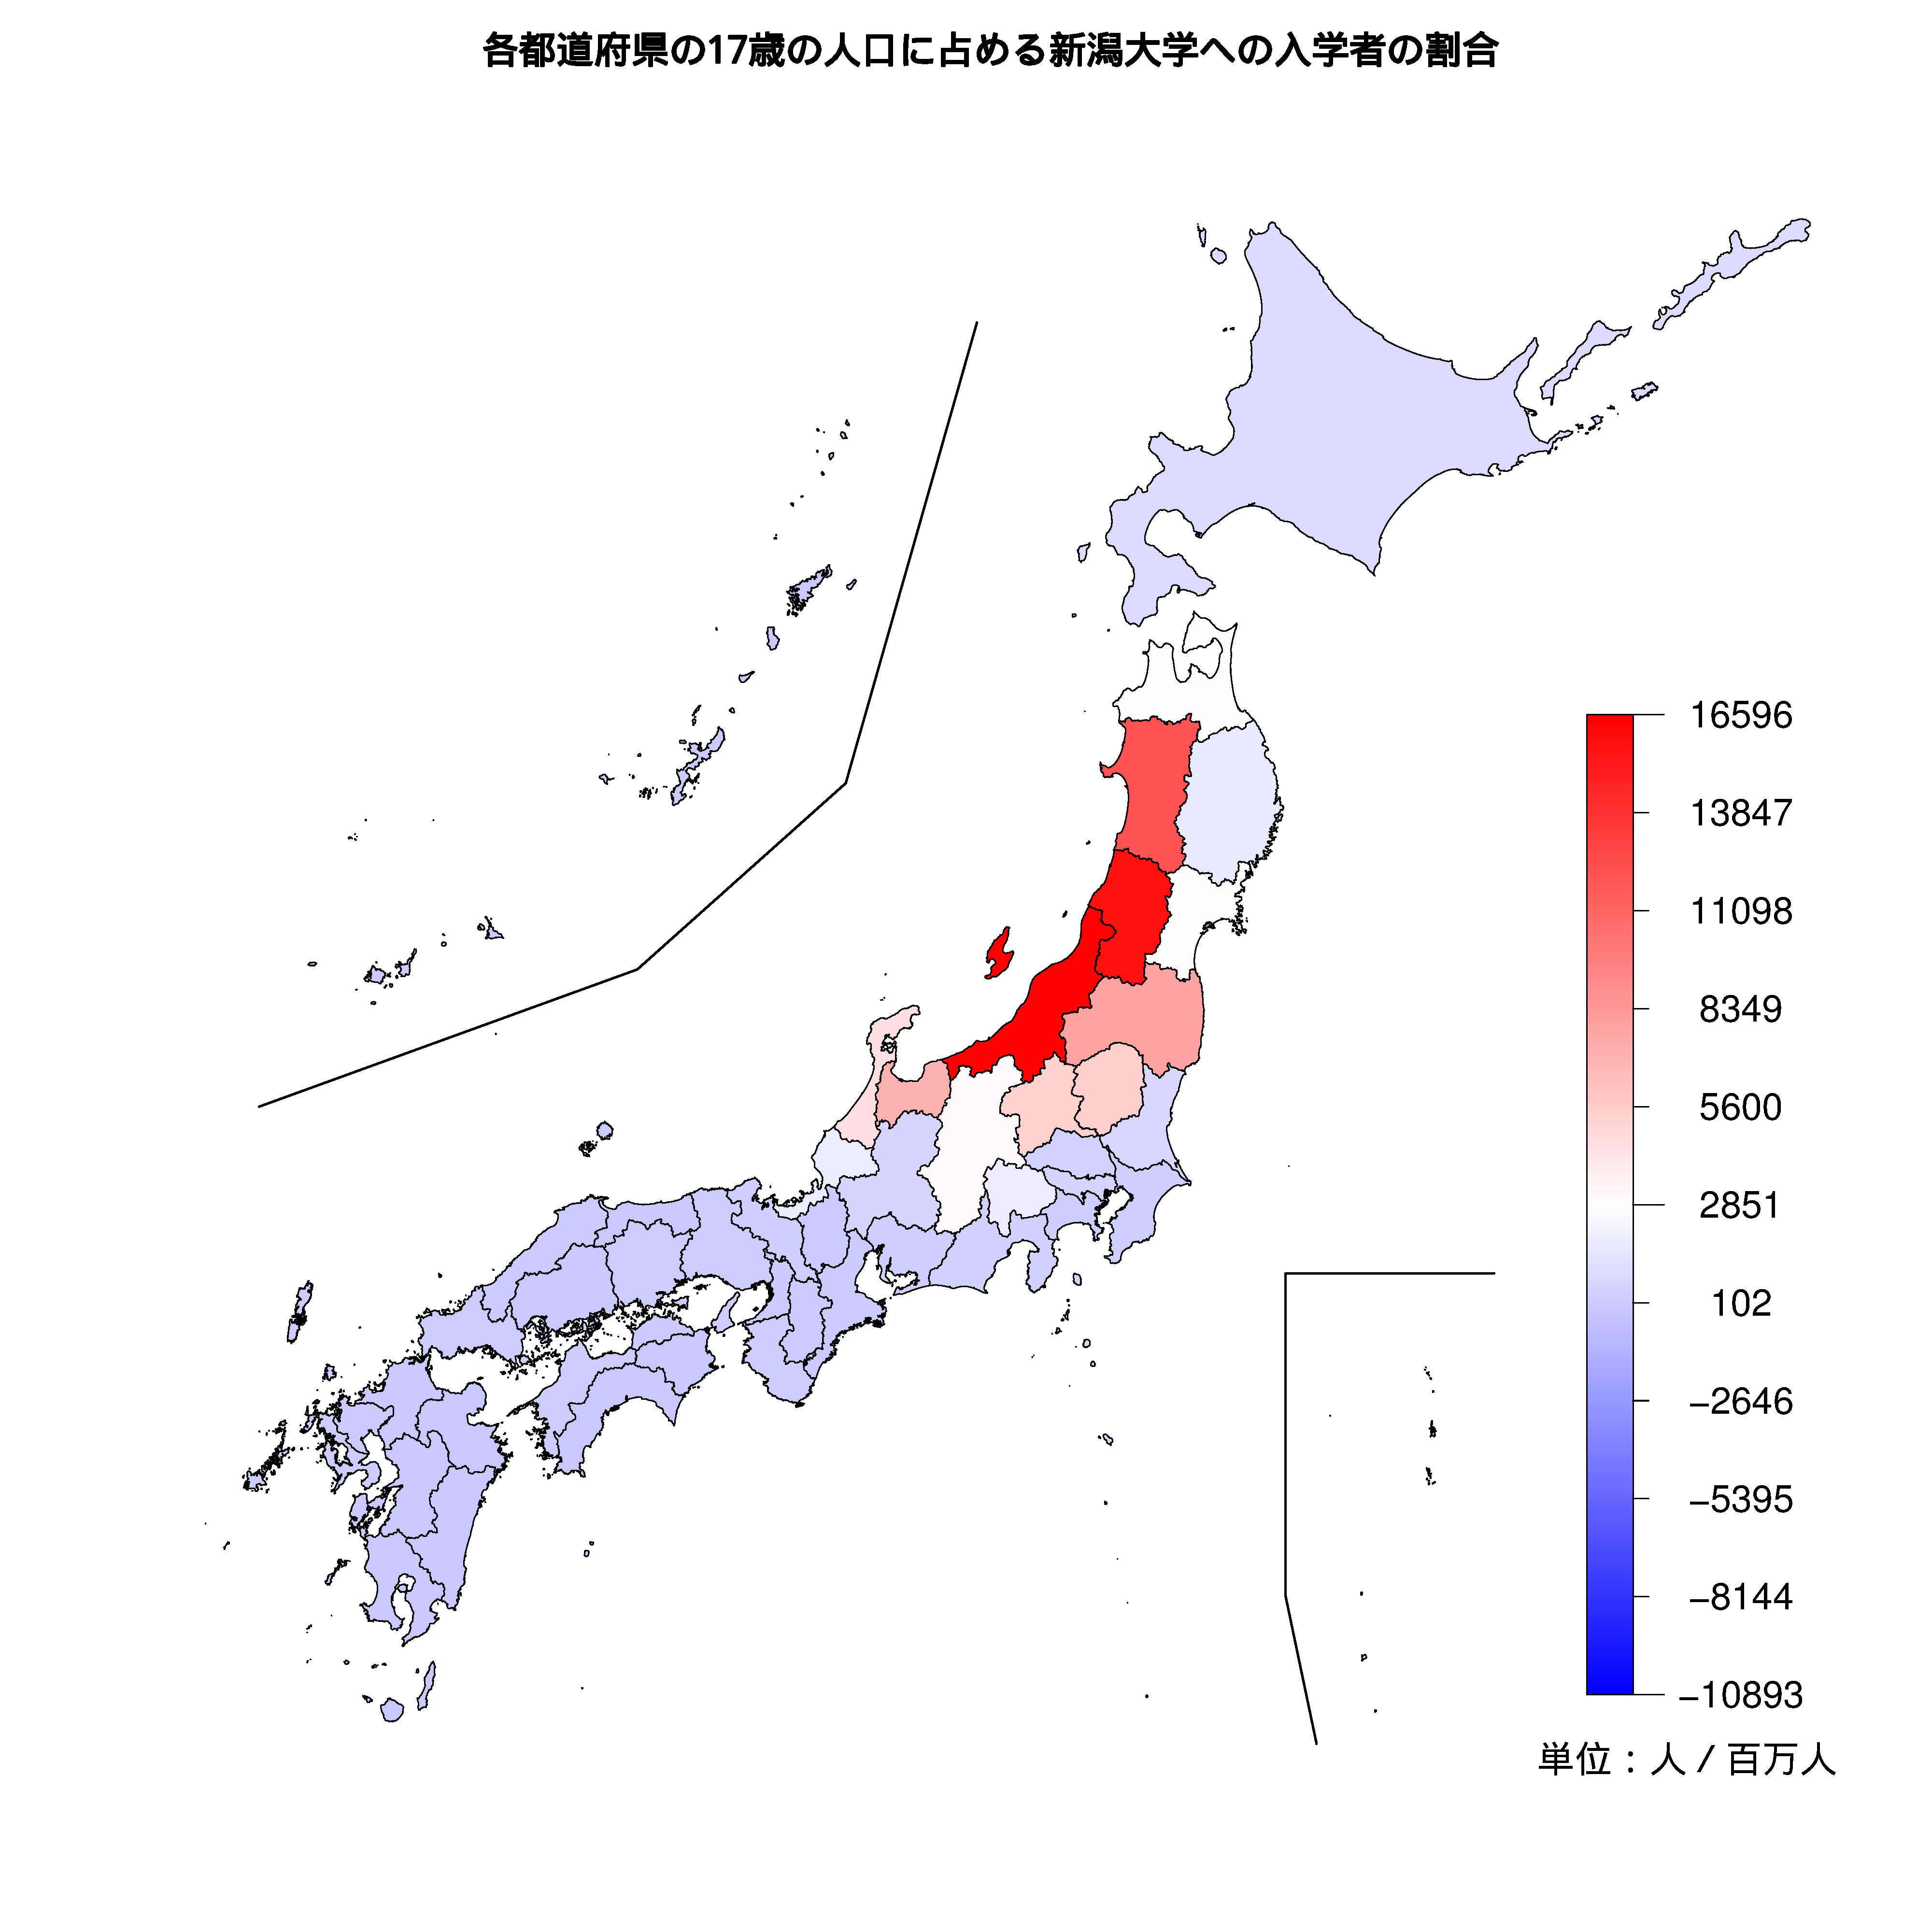 新潟大学への入学者が多い都道府県の色分け地図